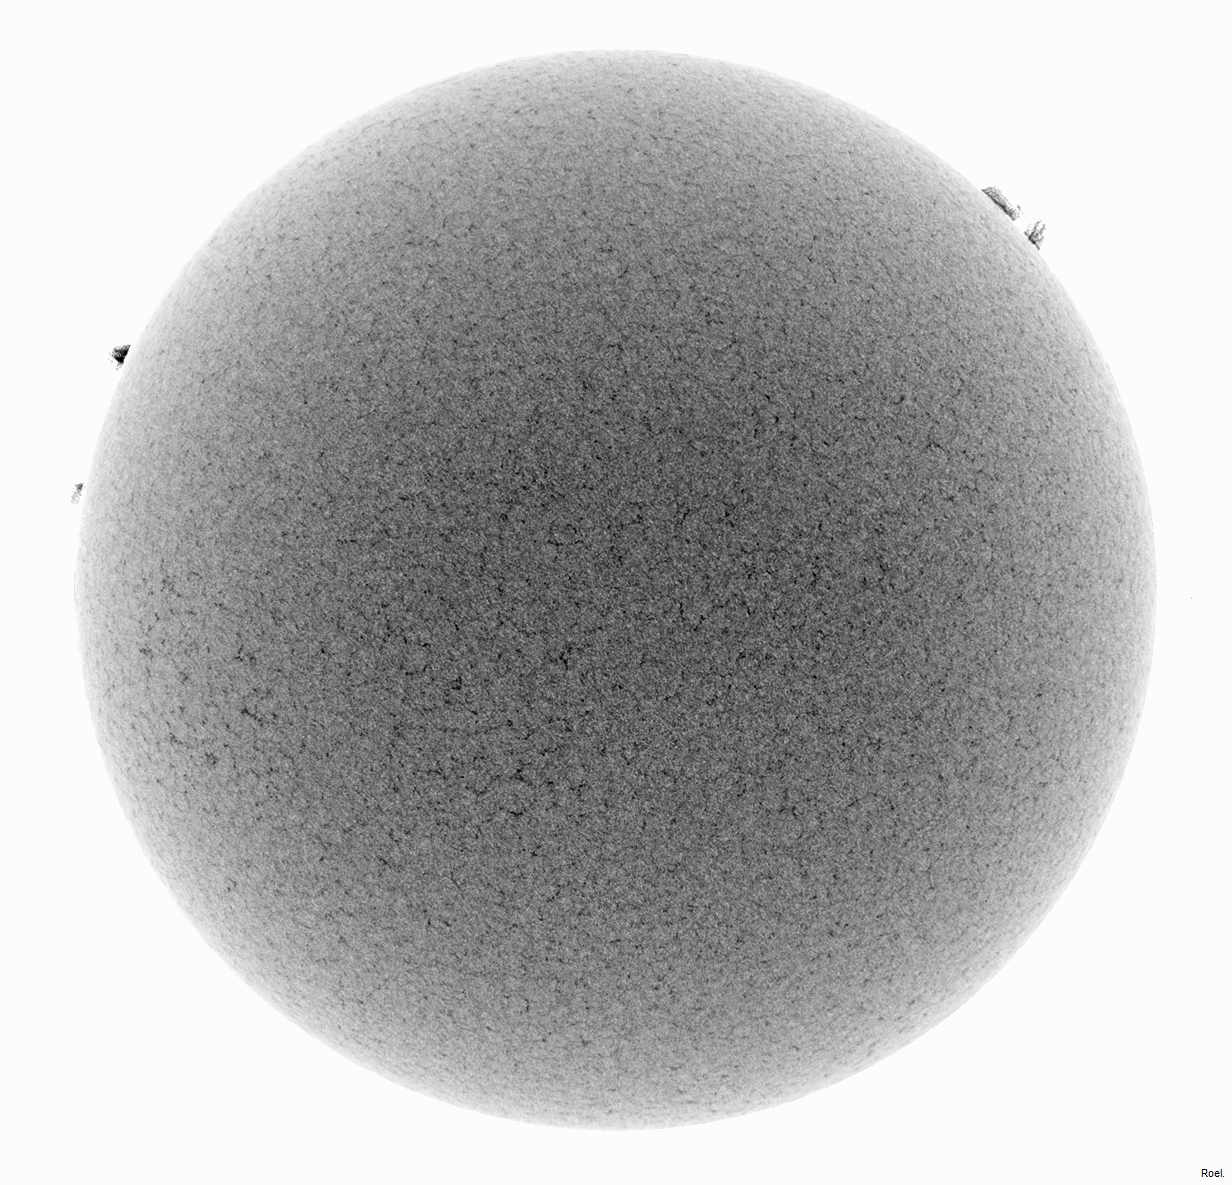 Sol del 25 de octubre del 2018-Meade-CaK-PSTmod-2neg.jpg